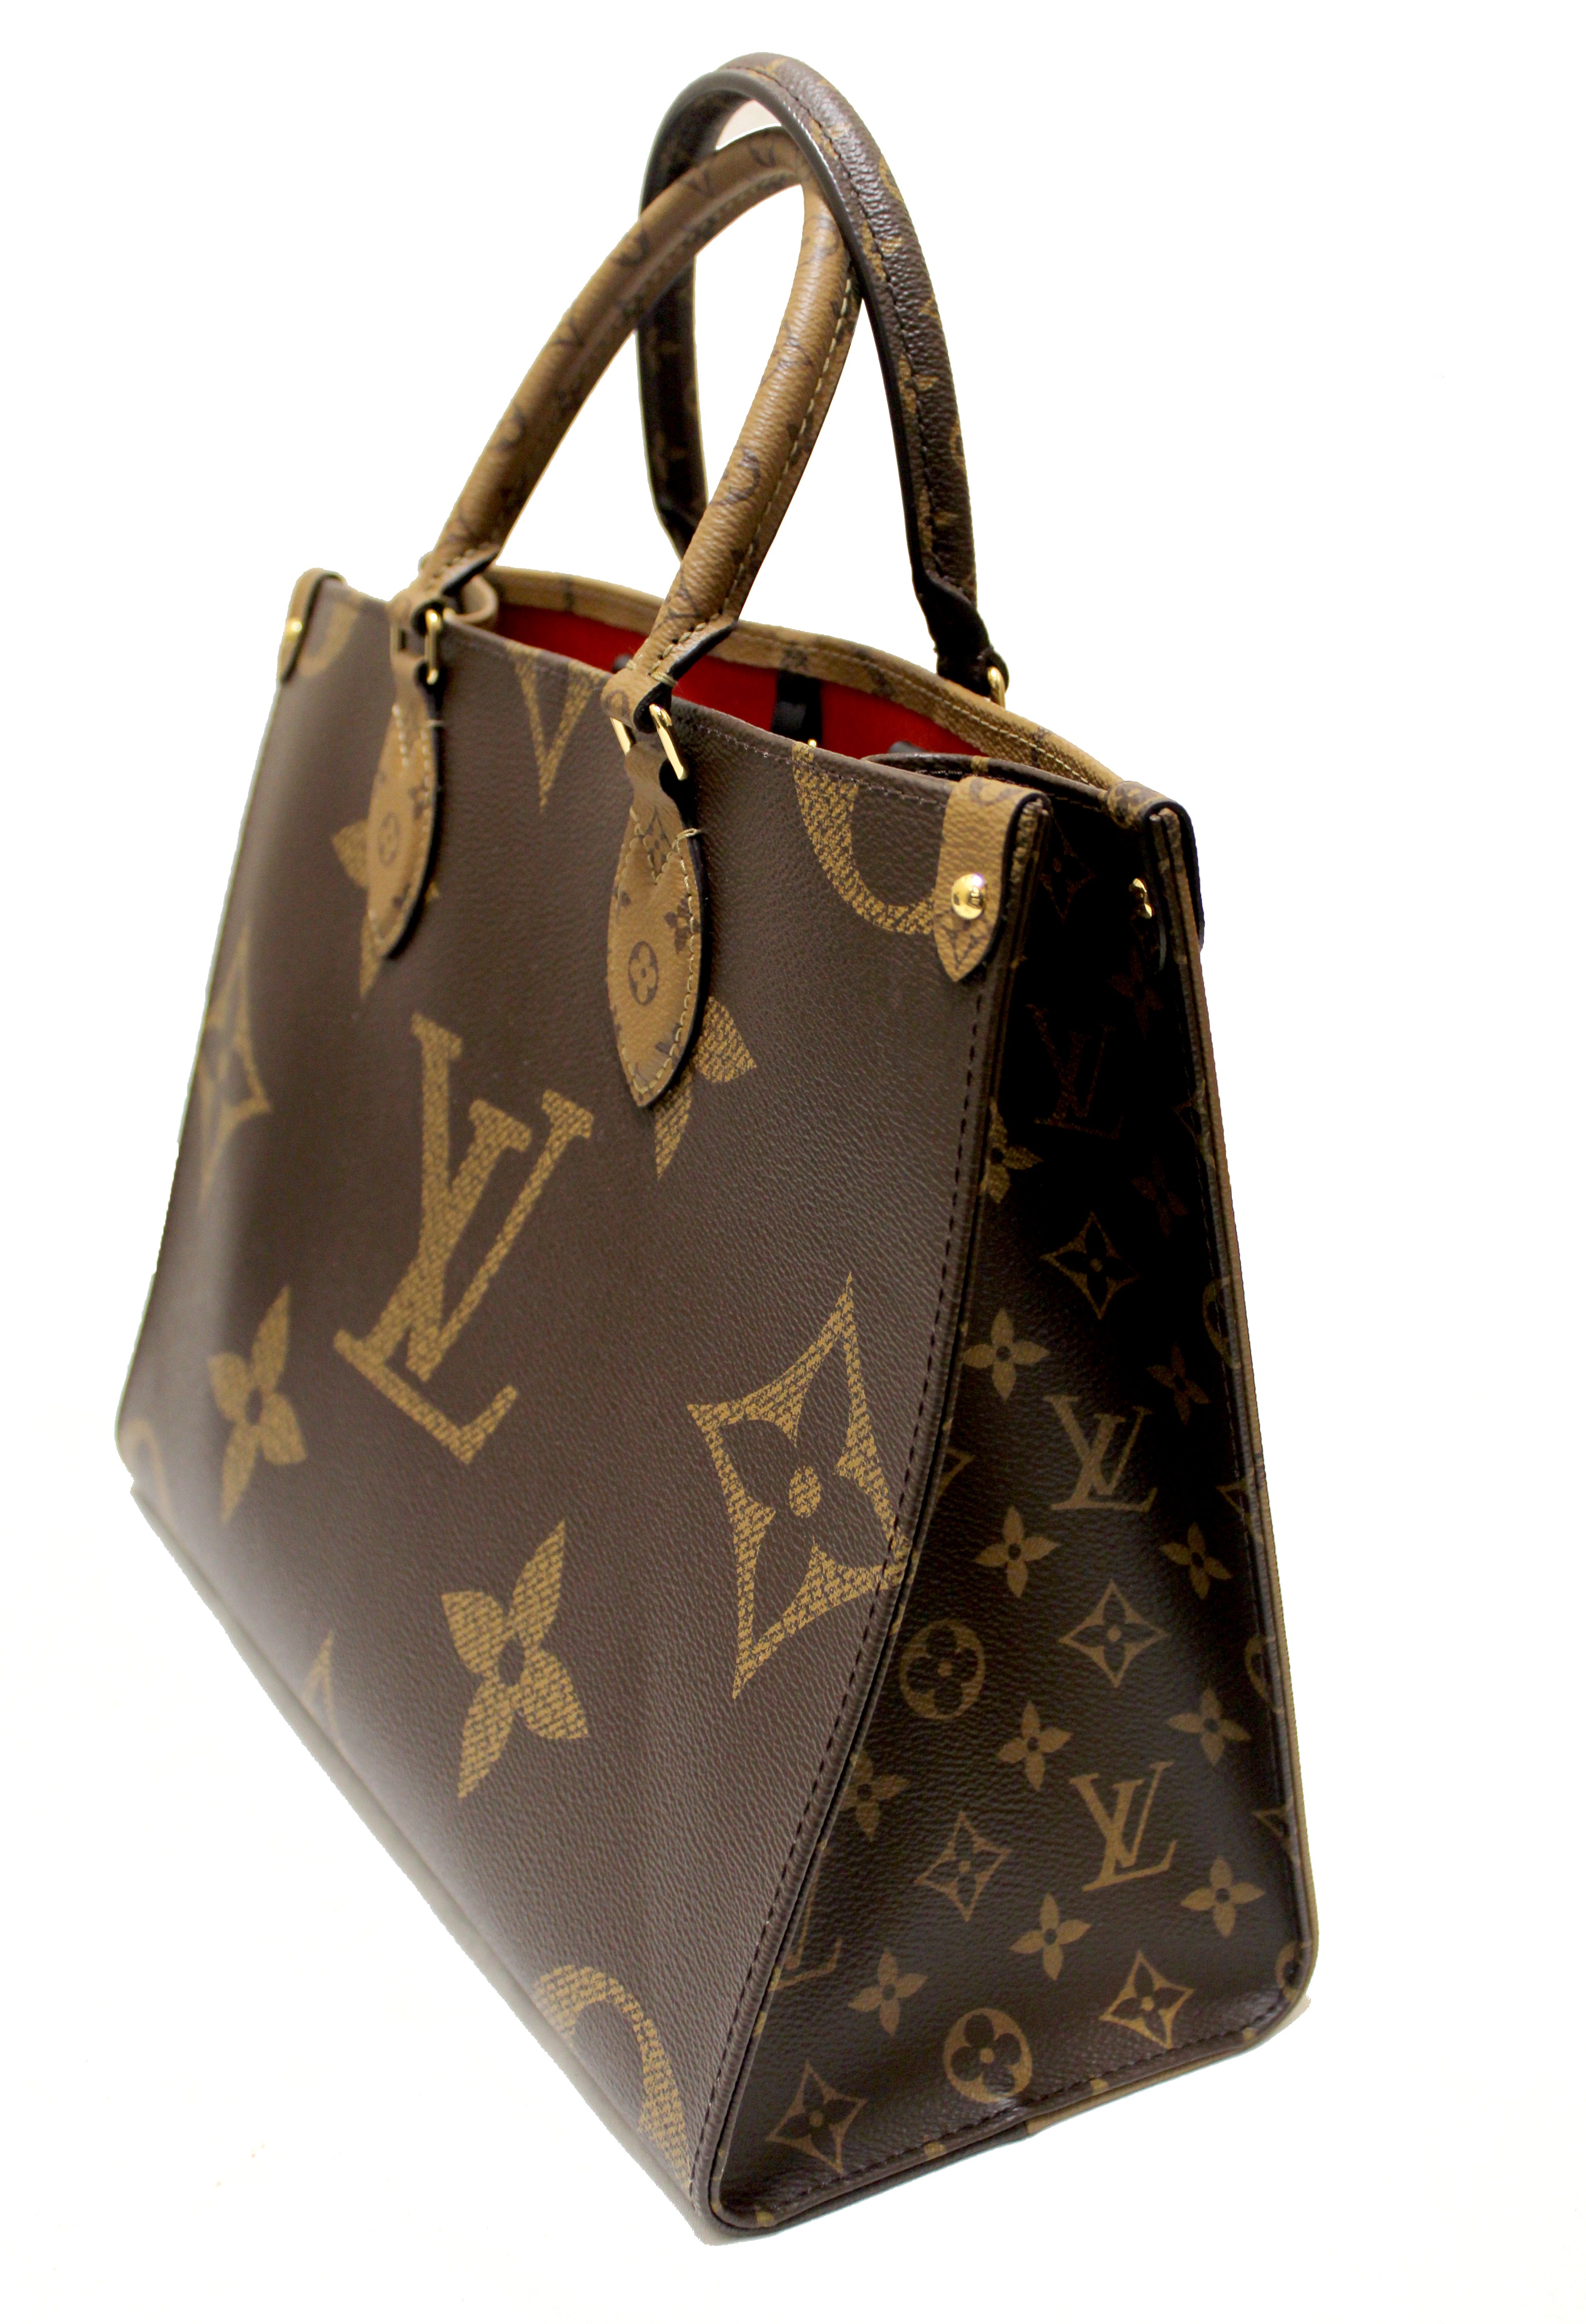 Authentic Louis Vuitton OnTheGo MM Monogram Tote bag – Paris